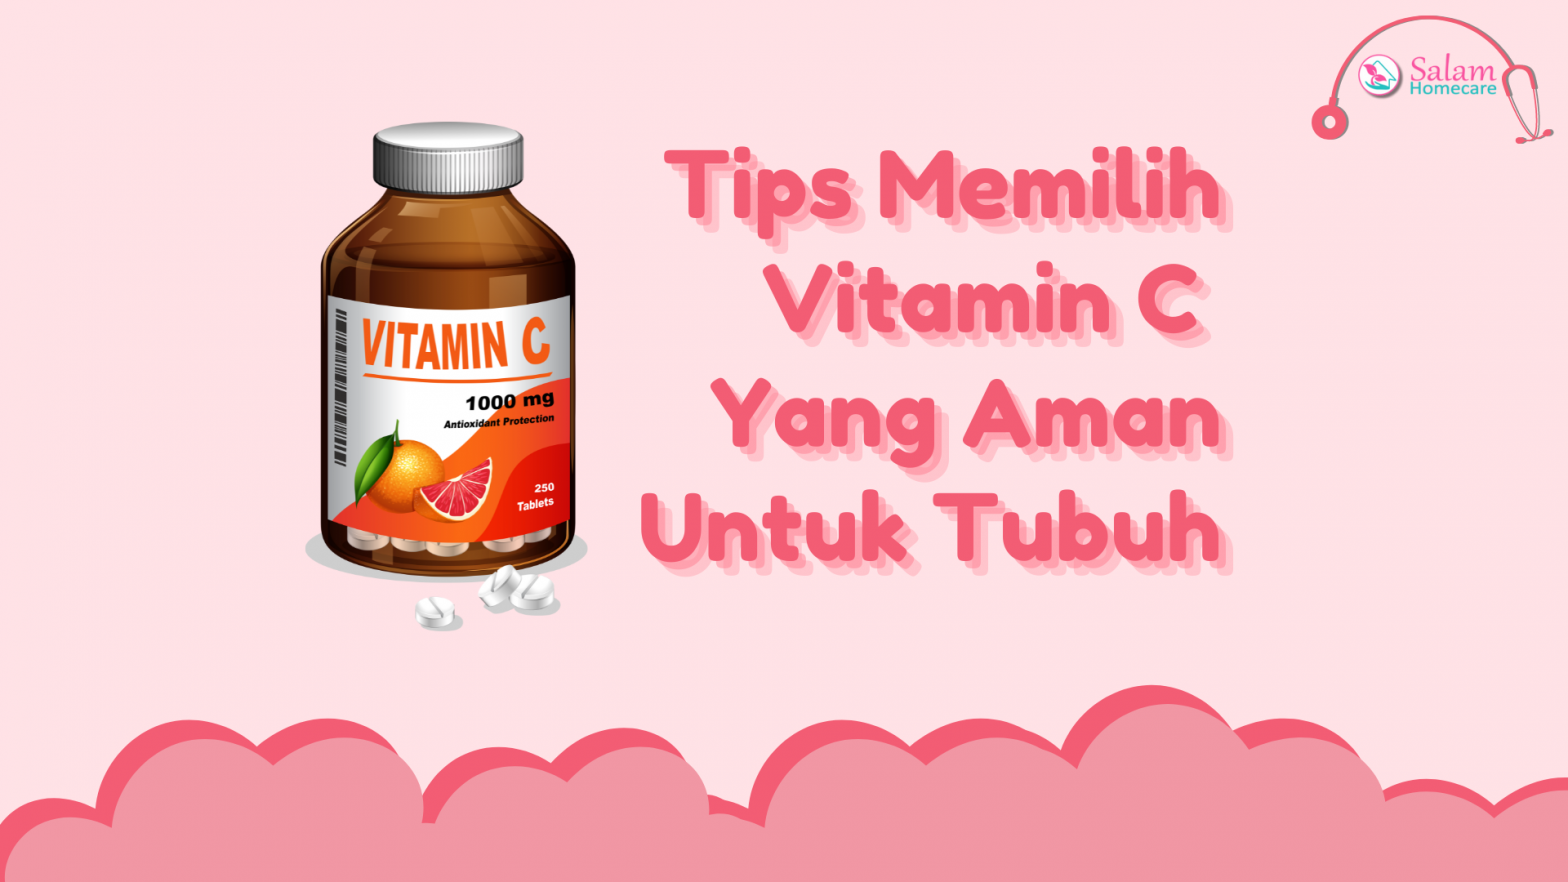 Tips Memilih Vitamin C Yang Aman Untuk Tubuh